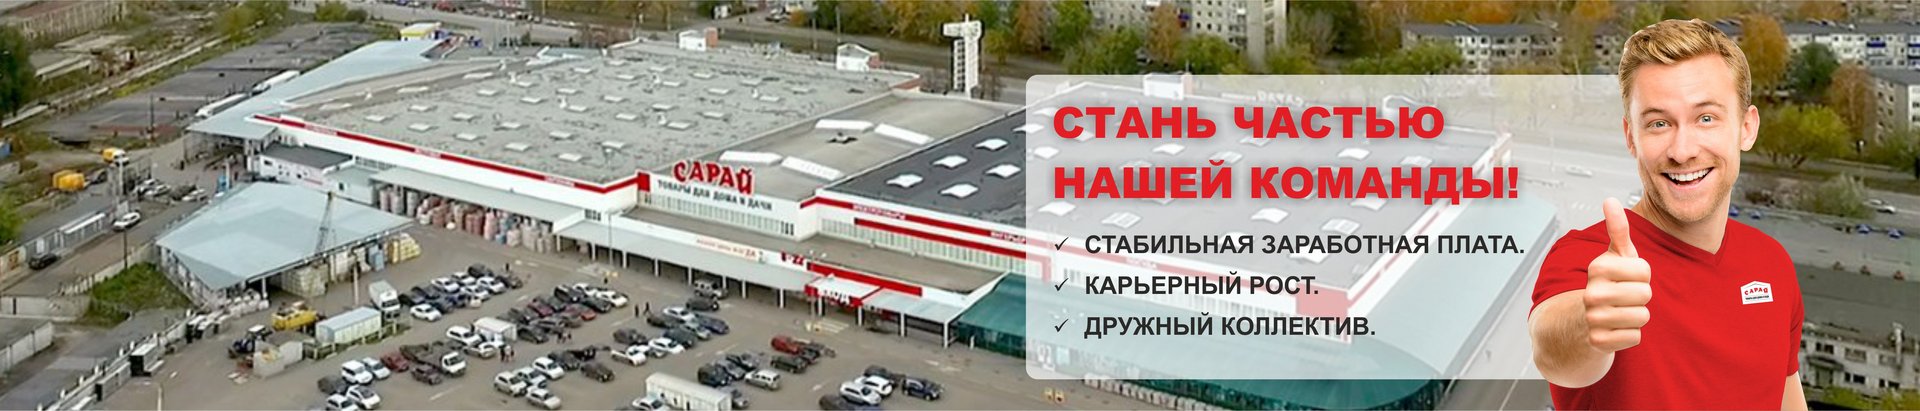 Сарай авиастроителей ульяновск каталог товаров